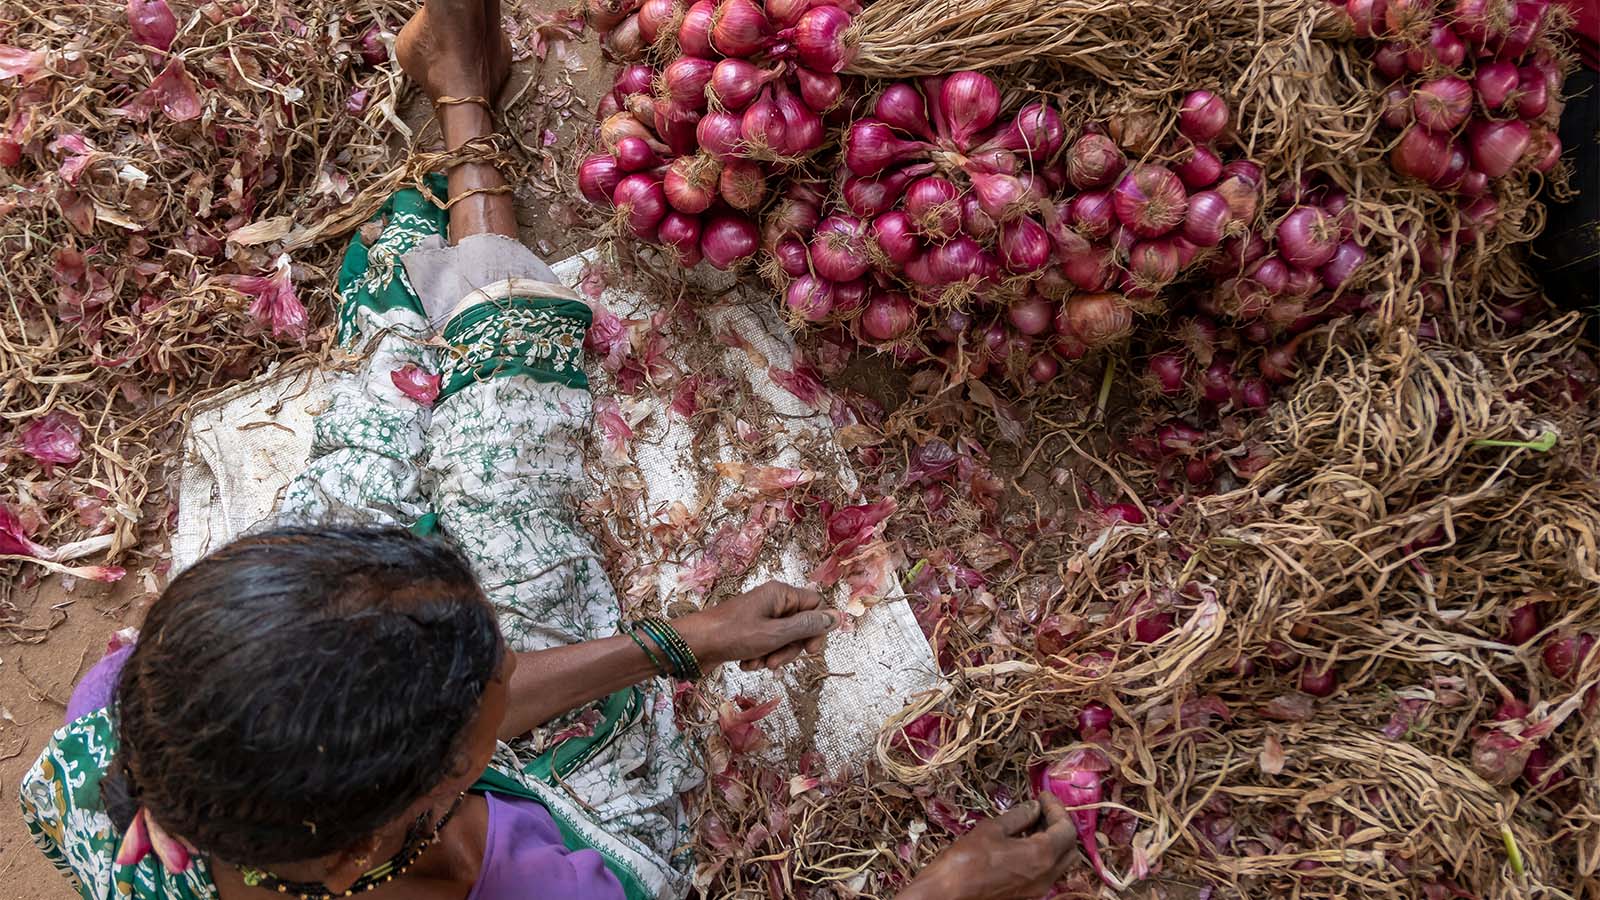 מגדלת בצלים הודית מכינה בצלים למכירה בשוק. מרץ 2018 (צילום: Denis Shevyakov / Shutterstock.com)